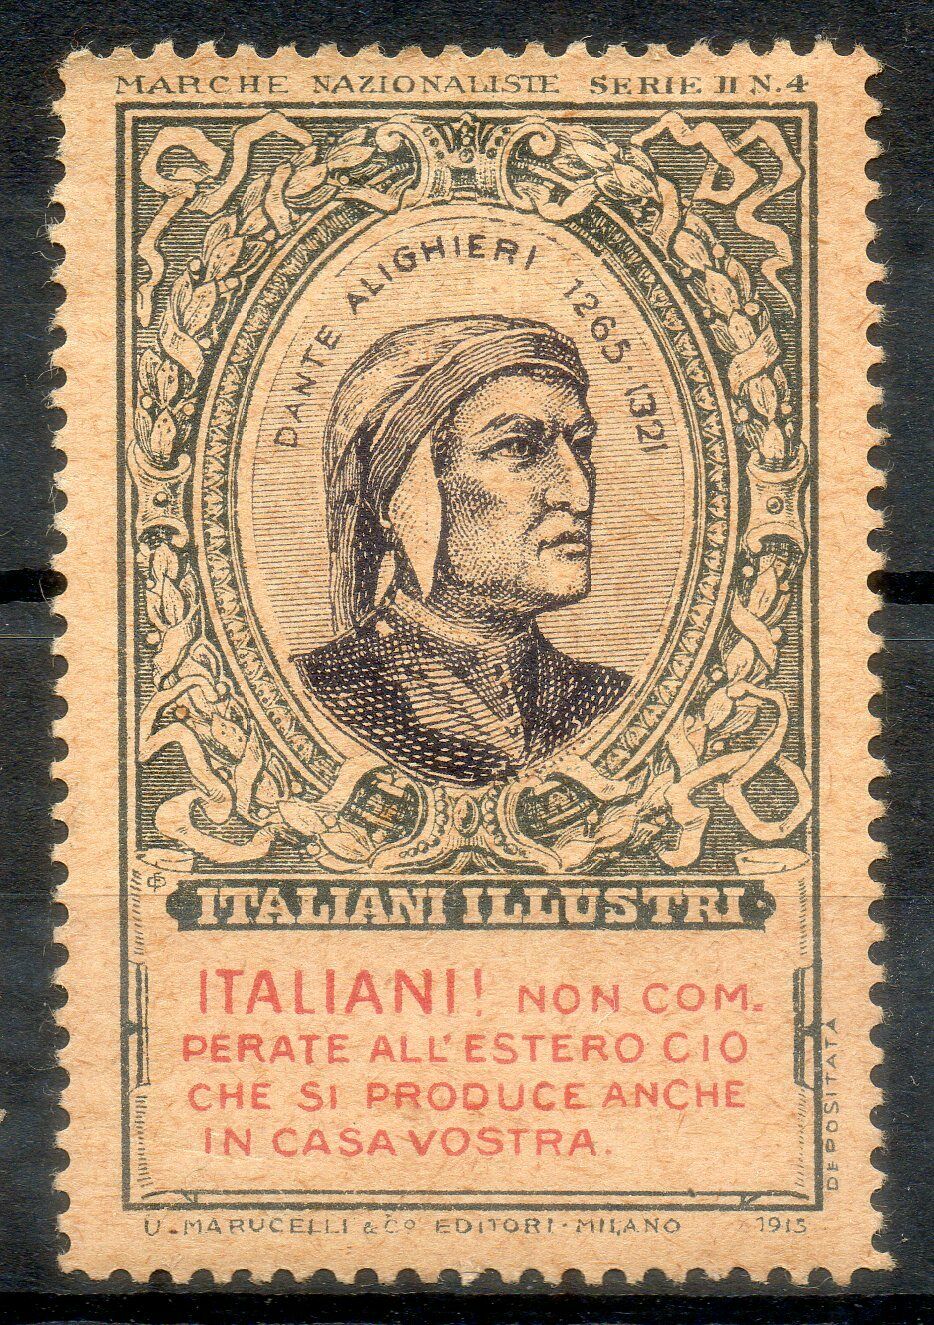 Italia-1915-Marche-Nazionaliste-Dante-Alighieri-Serie.jpg